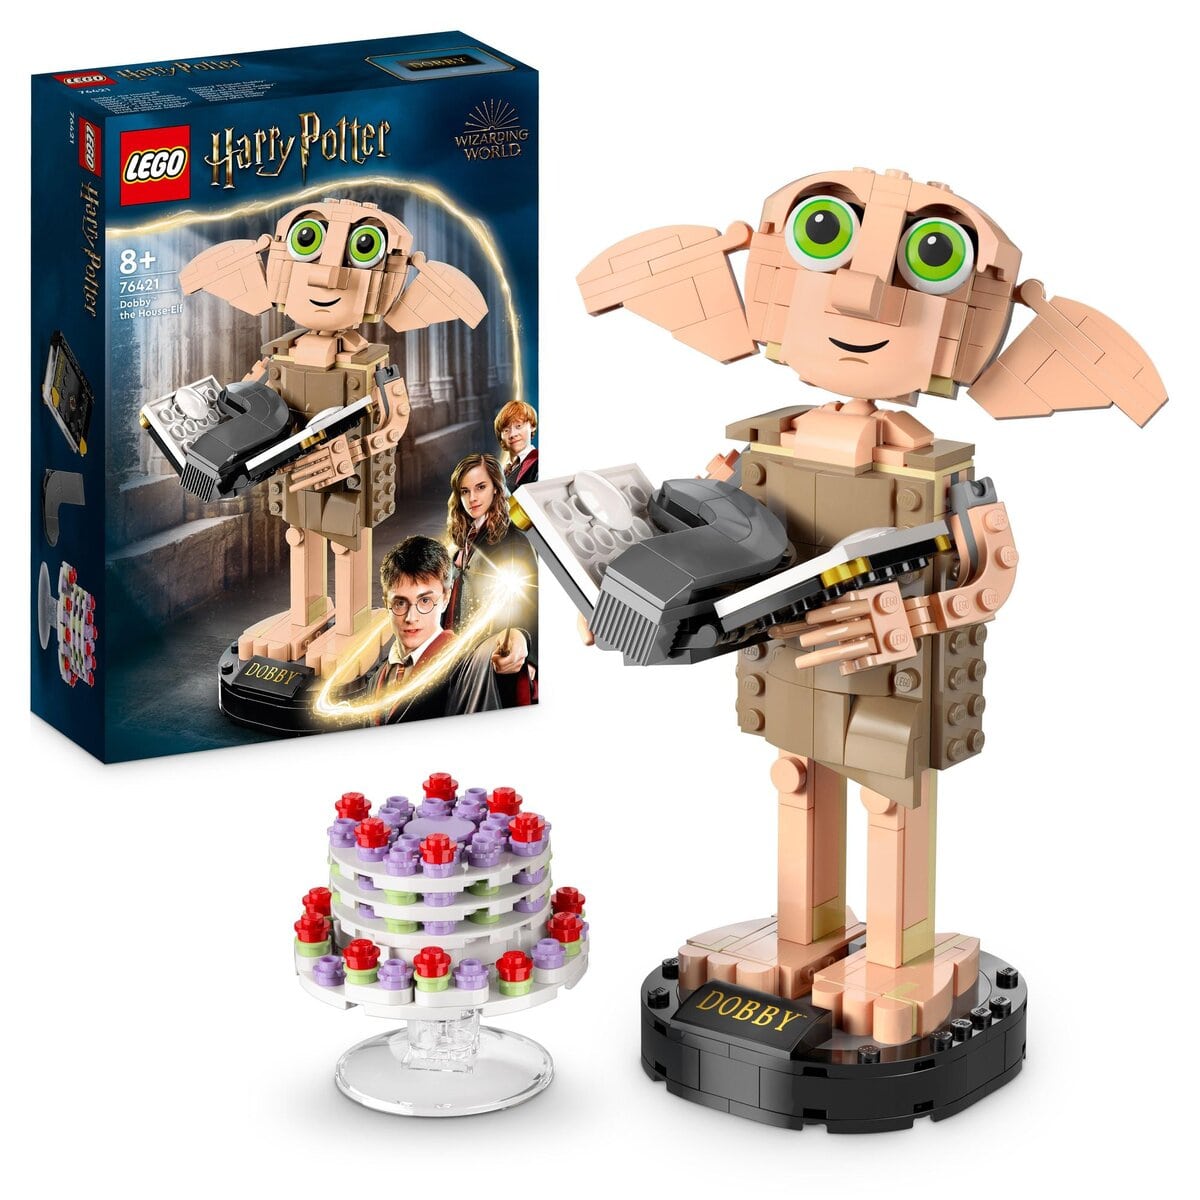 Nouveauté LEGO Harry Potter 76421 Dobby The House Elf : les visuels ...